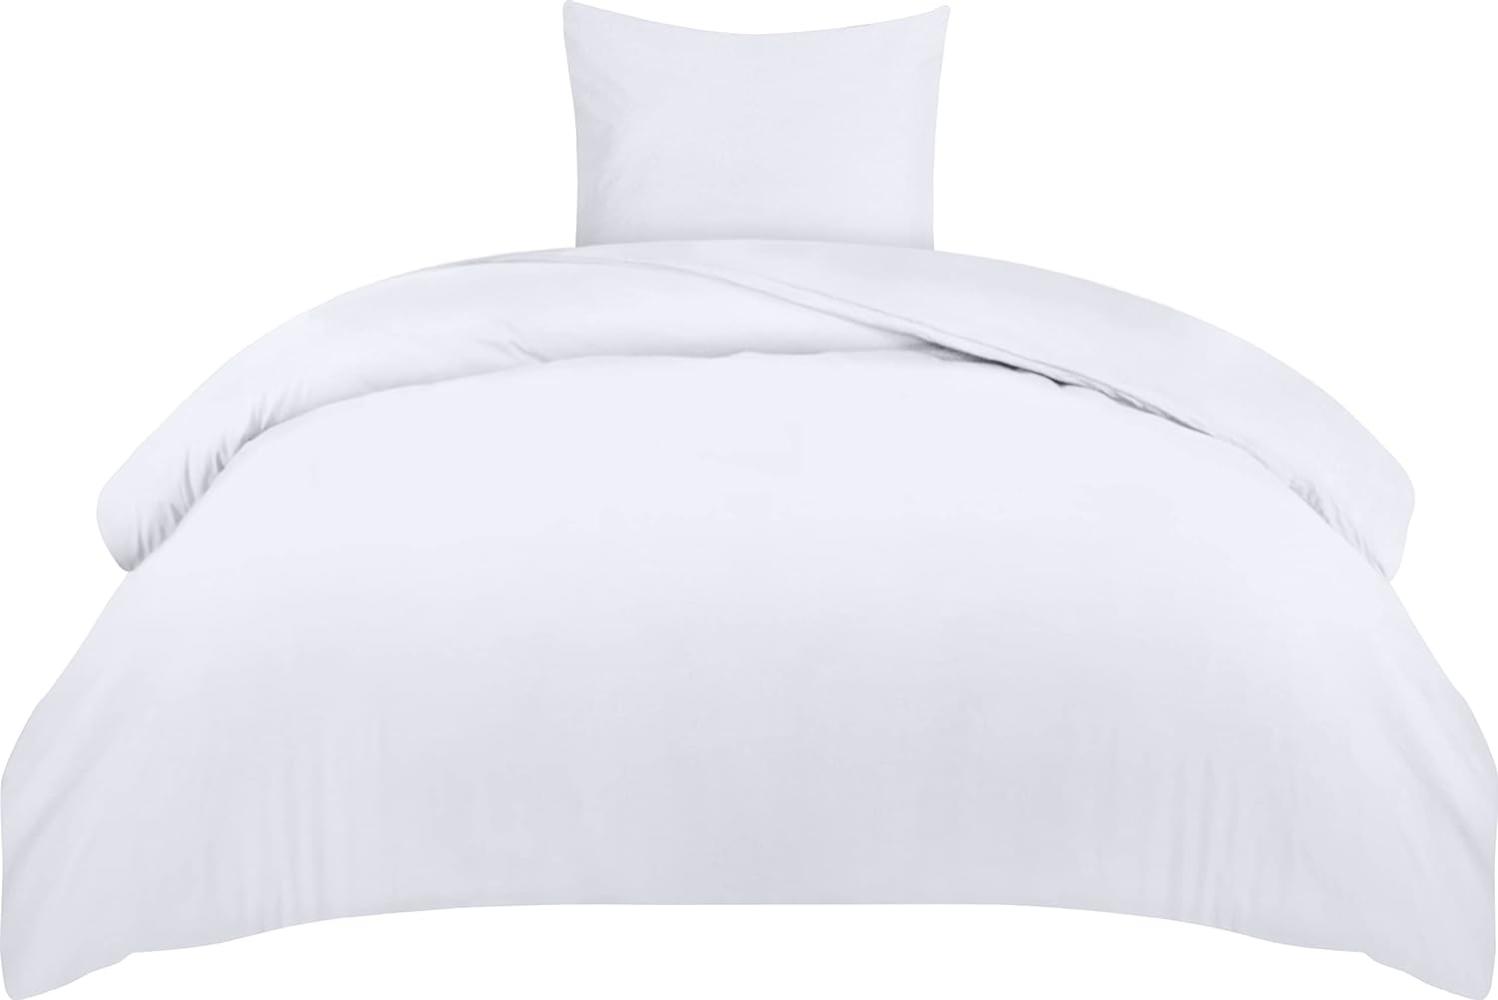 Utopia Bedding Bettwäsche 135x200 Set - Mikrofaser Bettbezug 135x200 cm + 1 Kissenbezug 80x80 cm - Weiß Bild 1